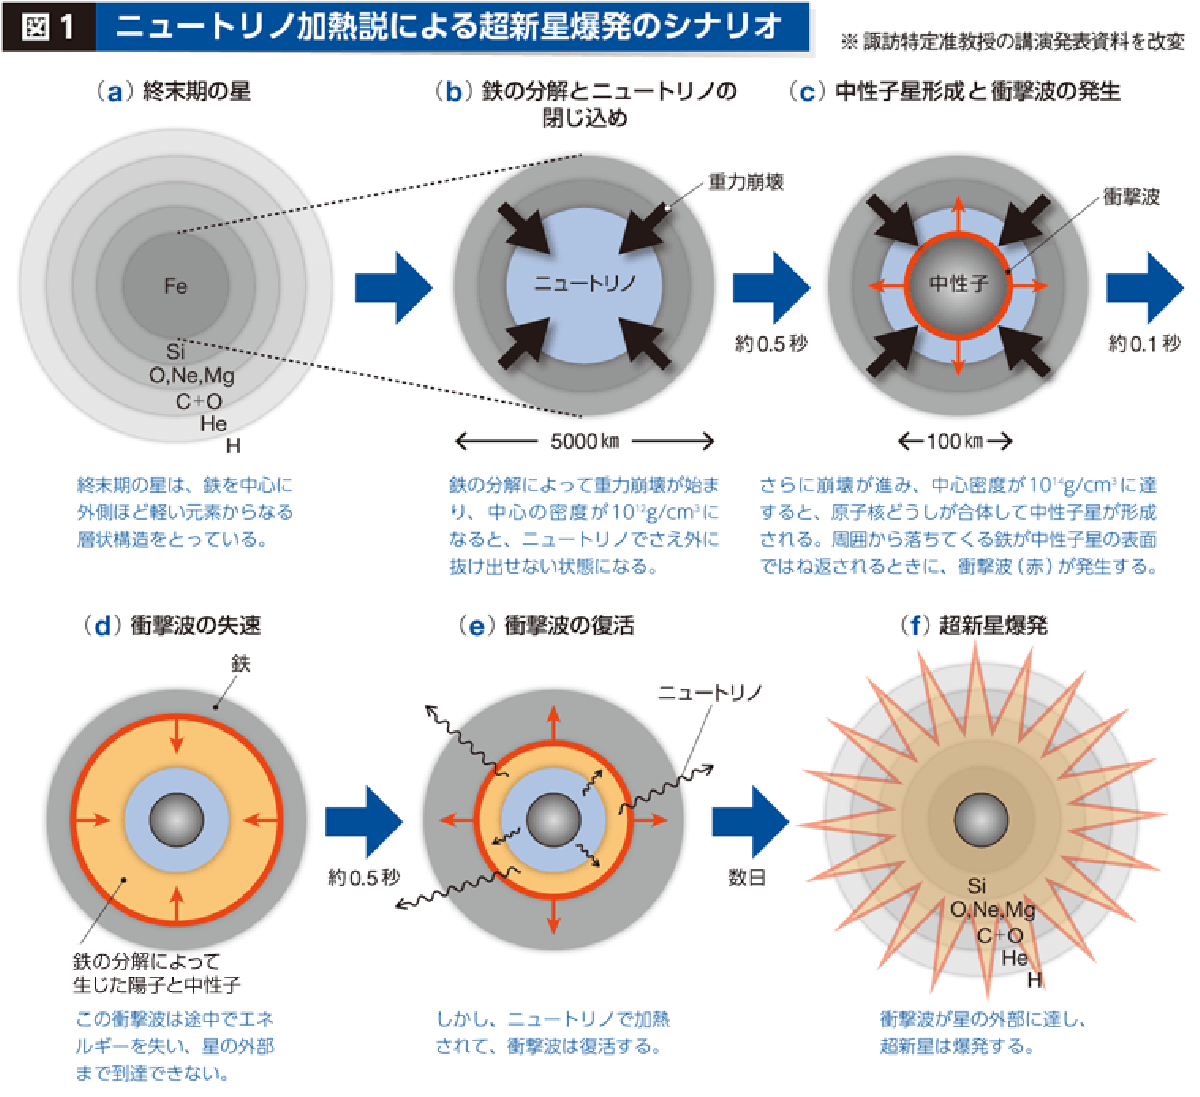 図１　ニュートリノ加熱説による超新星爆発のシナリオ